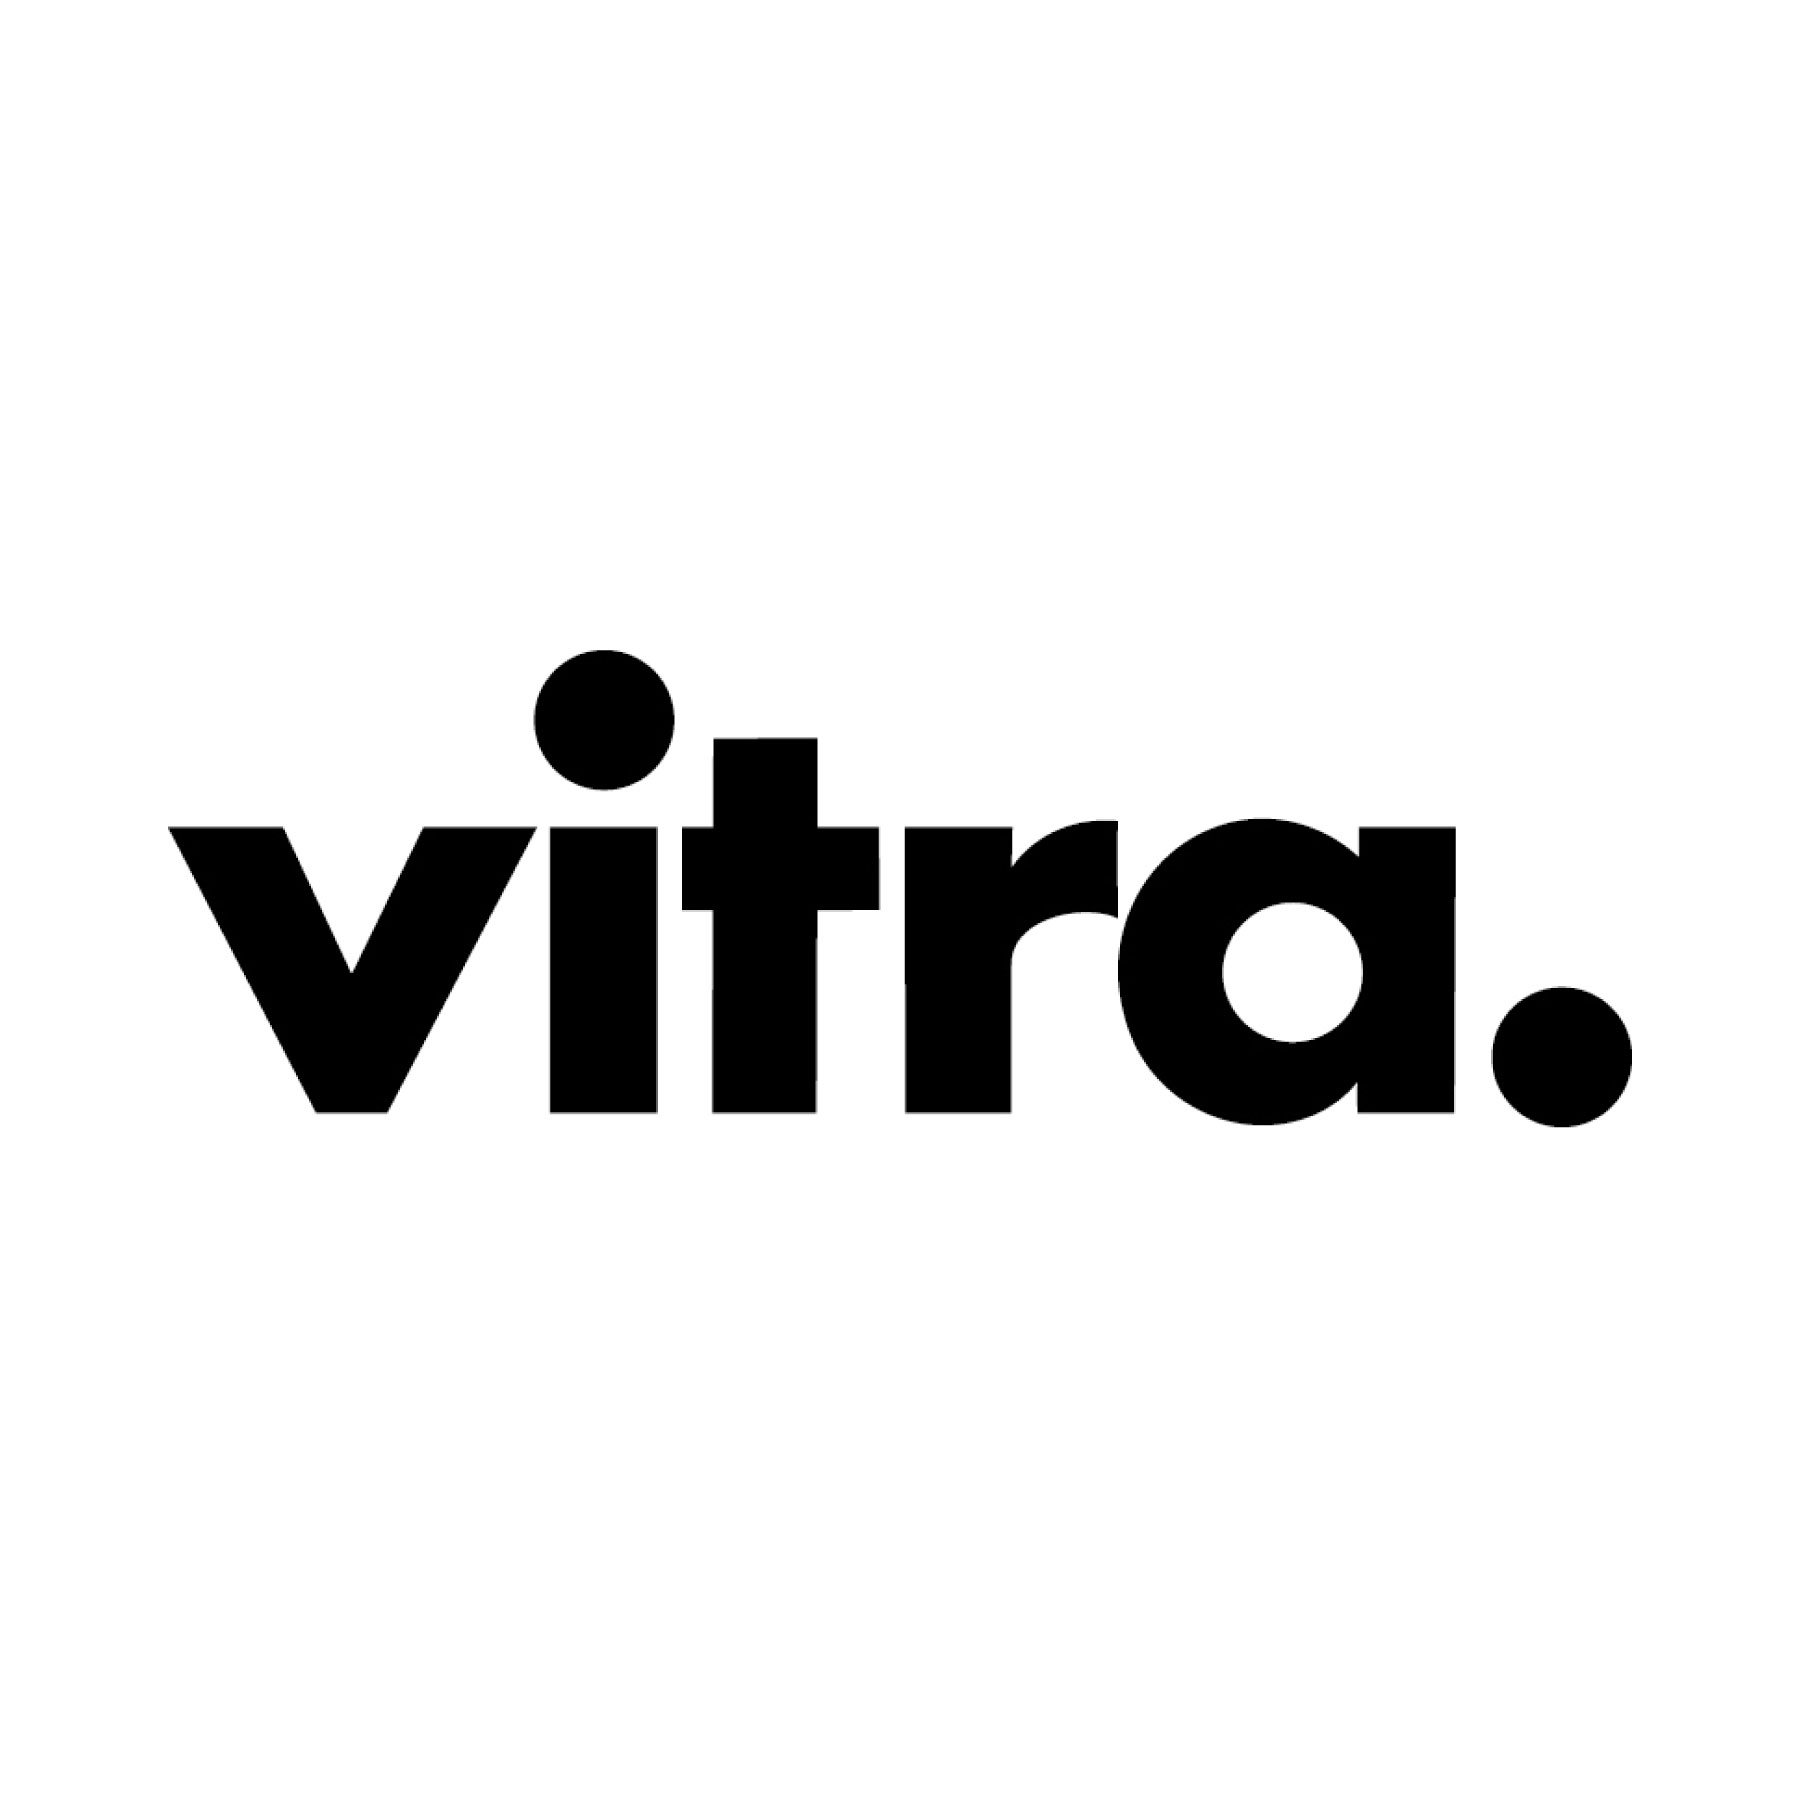 Vitra（ヴィトラ） ブランドロゴ